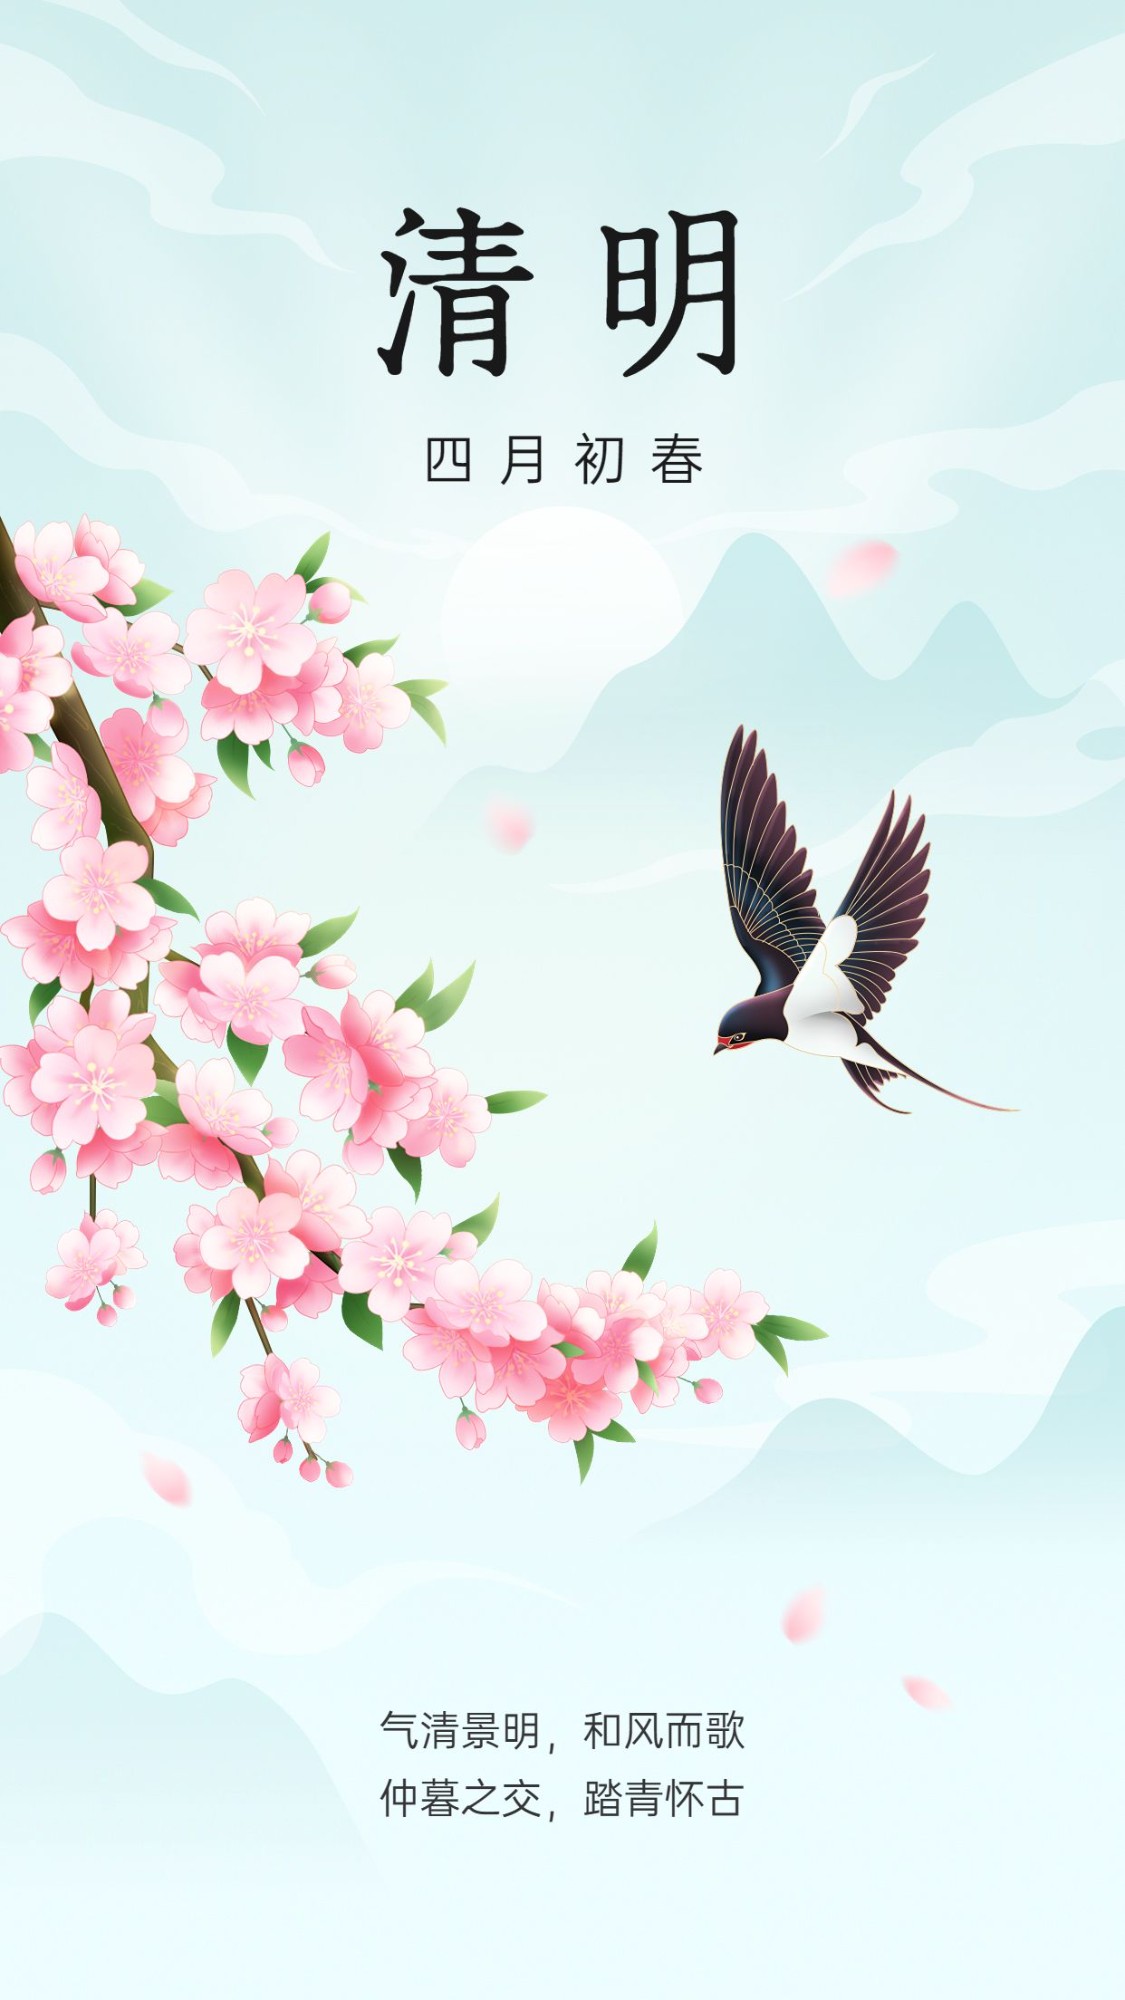 清明节节日祝福手机海报